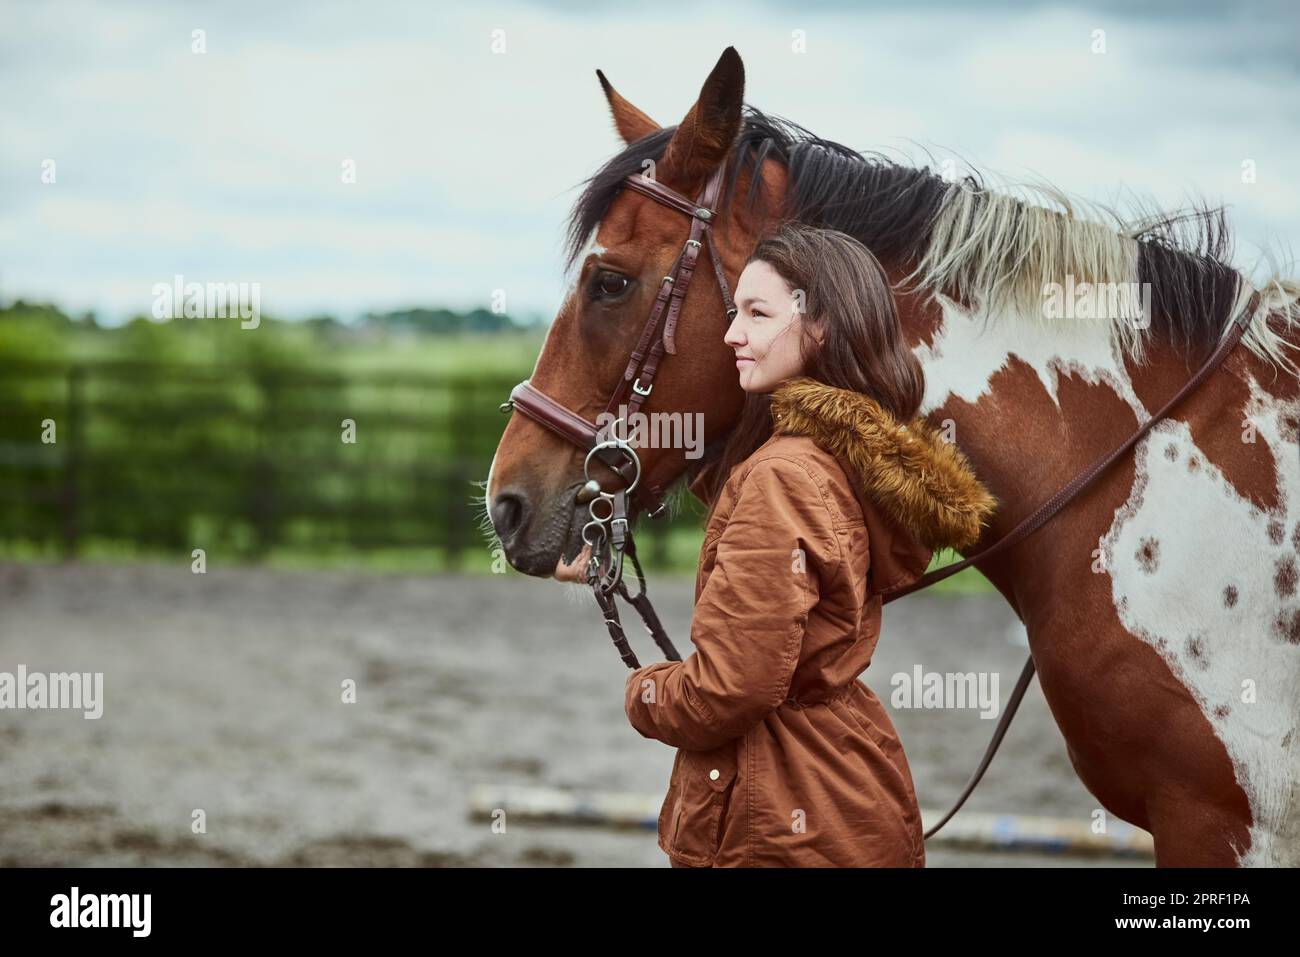 Wenn du ein Pony hast, hast du alles. Ein Teenager-Mädchen, das neben ihrem Pony auf einer Farm steht. Stockfoto